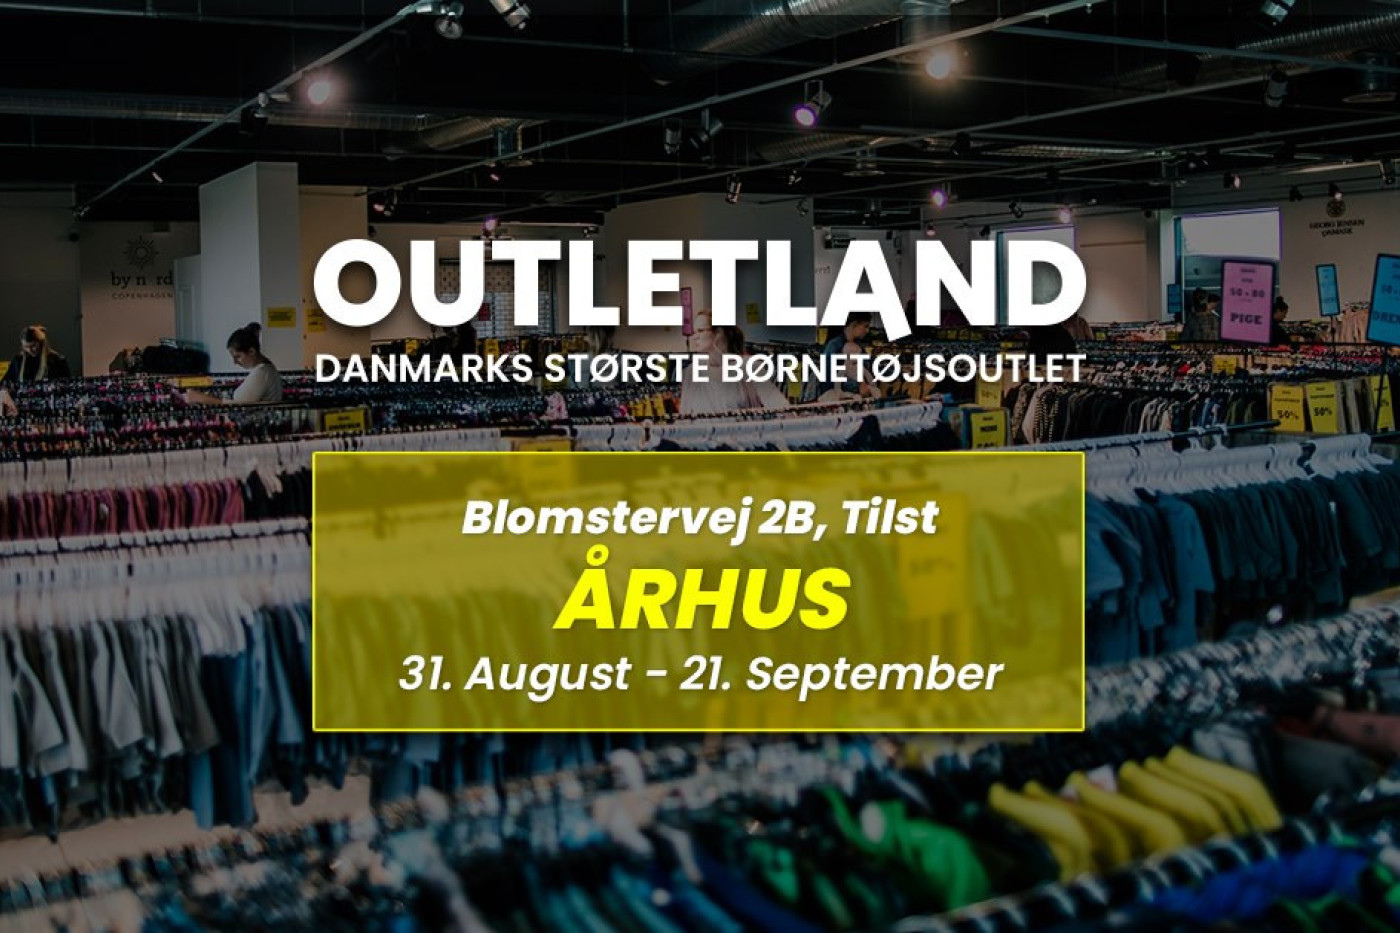 Outletland Aarhus